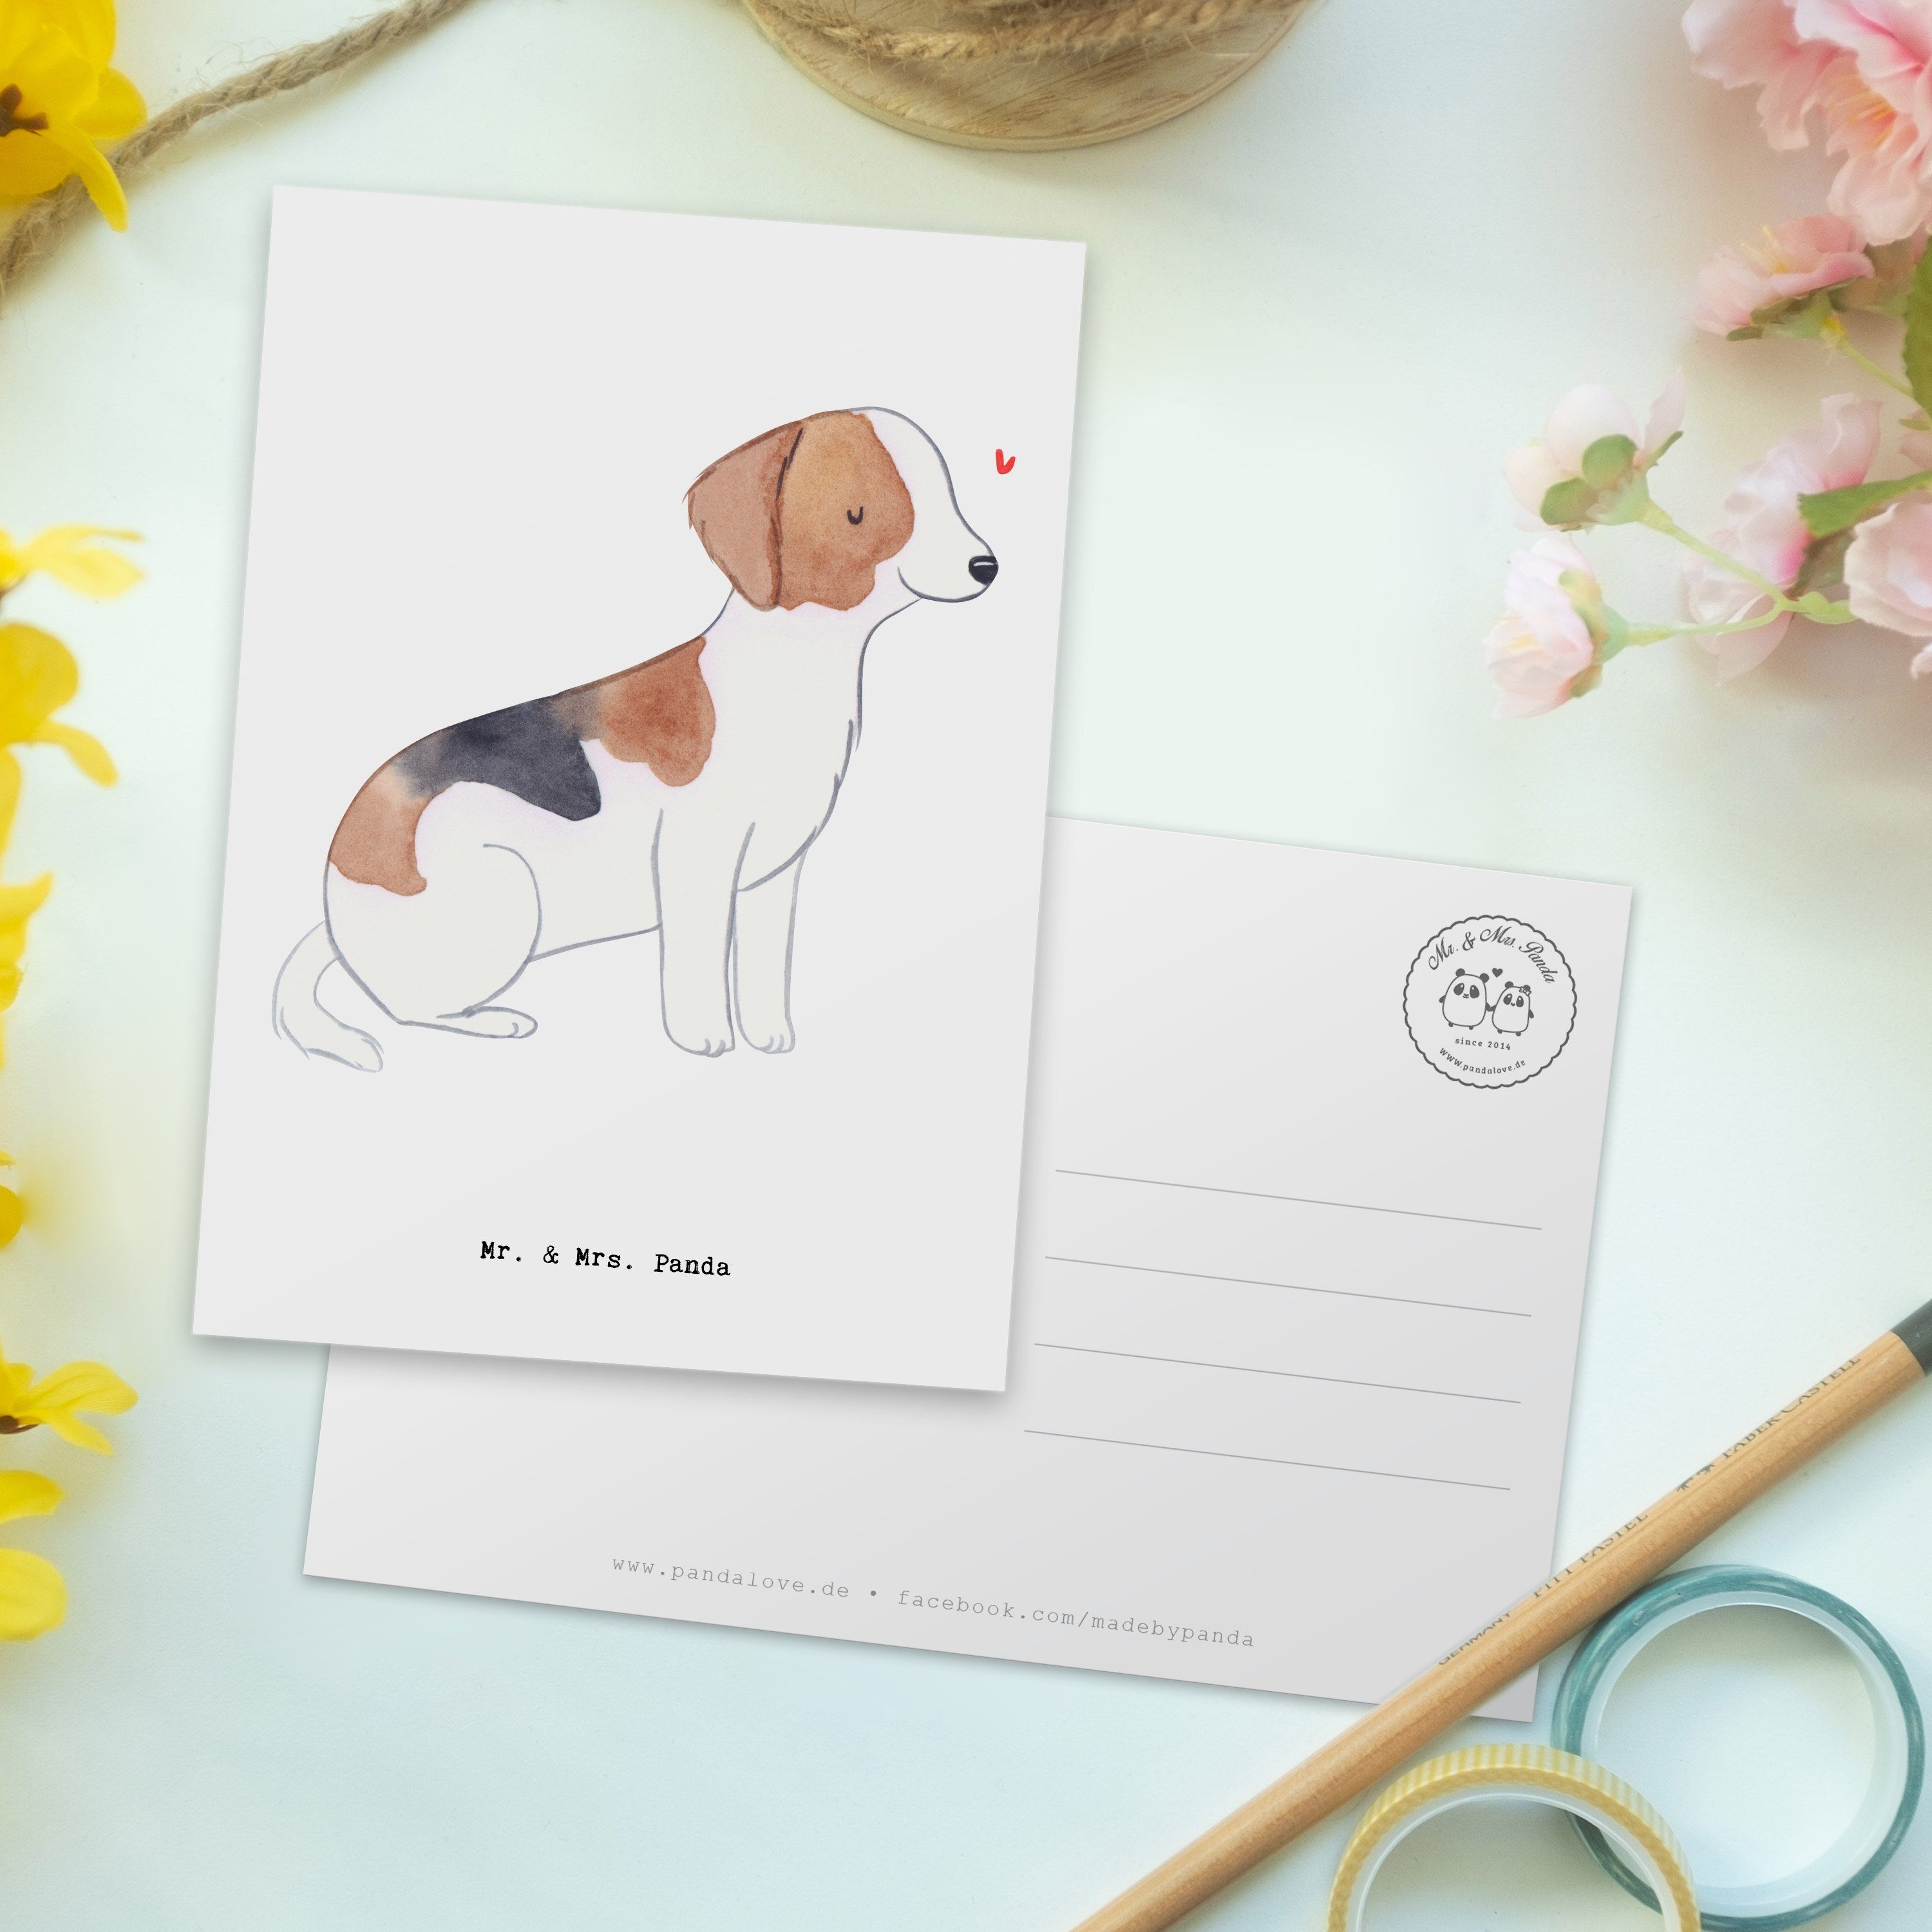 Mr. & Mrs. Panda Postkarte - - Weiß Hundebesitzer, La Foxhound Geschenk, Einladung, Hund, Moment